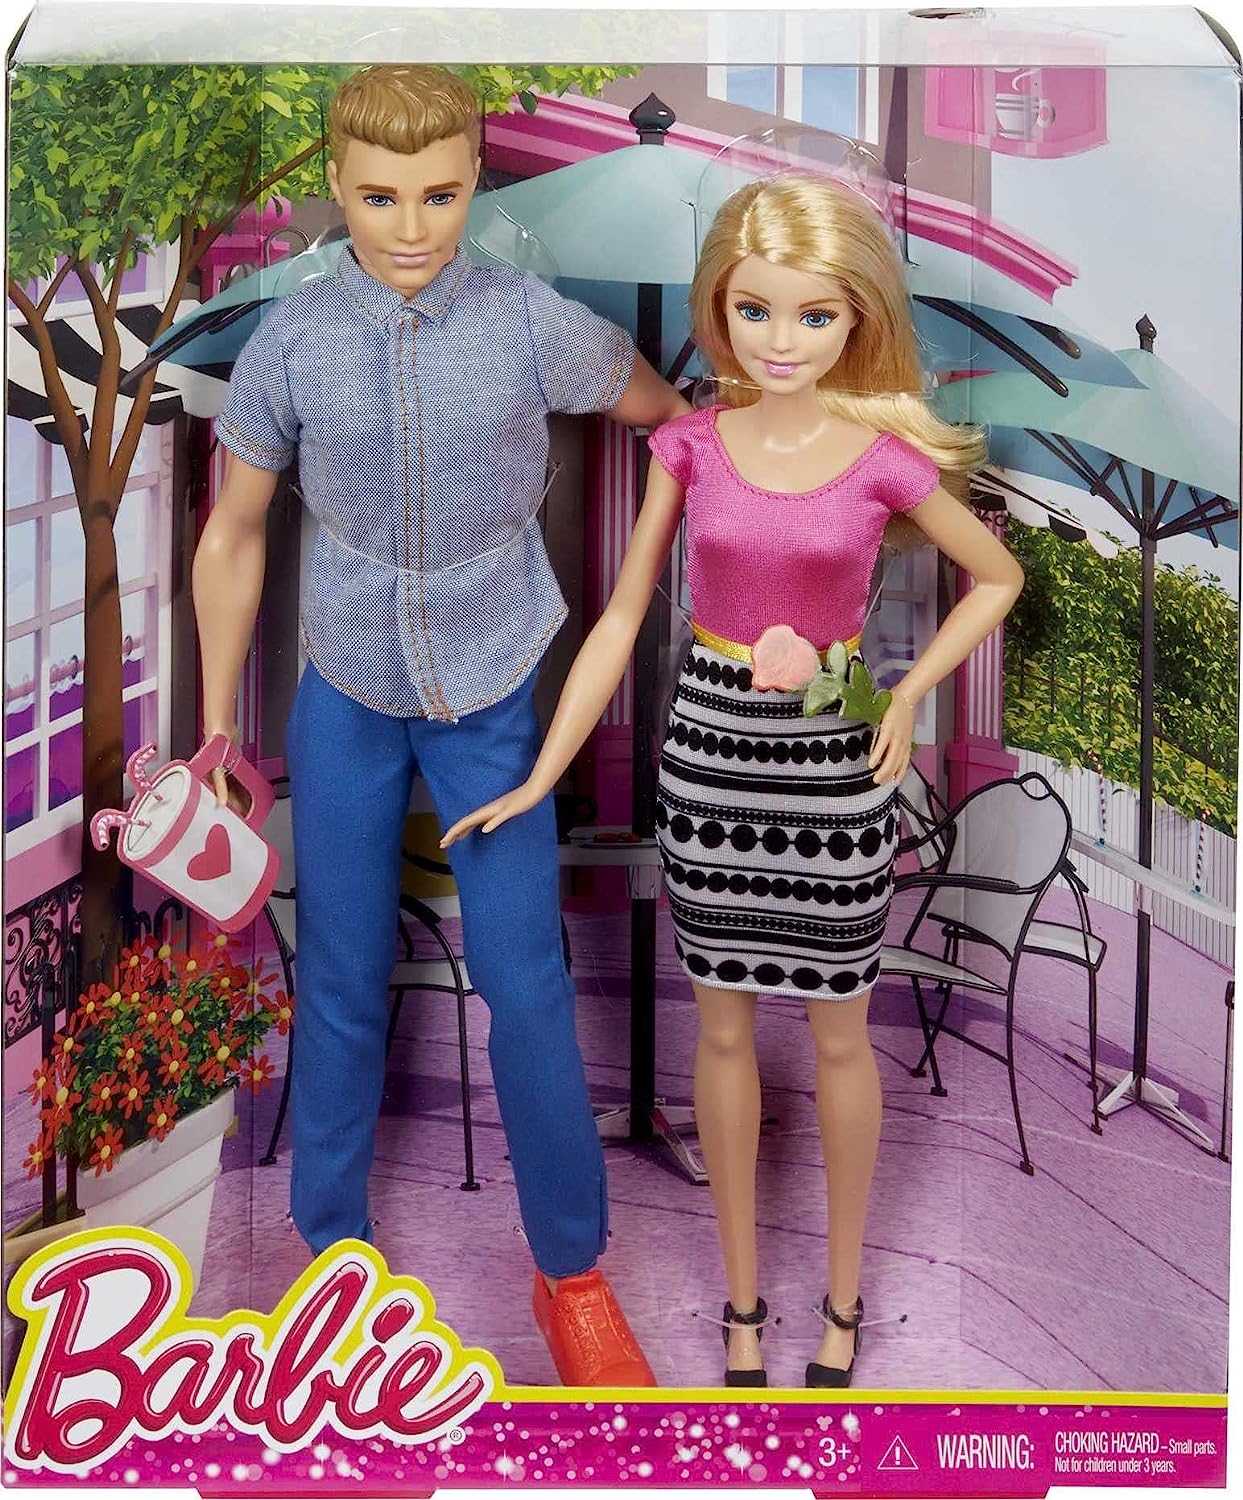 即日出荷 バービー バービー人形 ケン Ken Dlh76 Barbie And Ken Doll Together Amazon Exclusive バービー バービー人形 ケン Ken Dlh76 Angelica 最適な価格 Www Faan Gov Ng